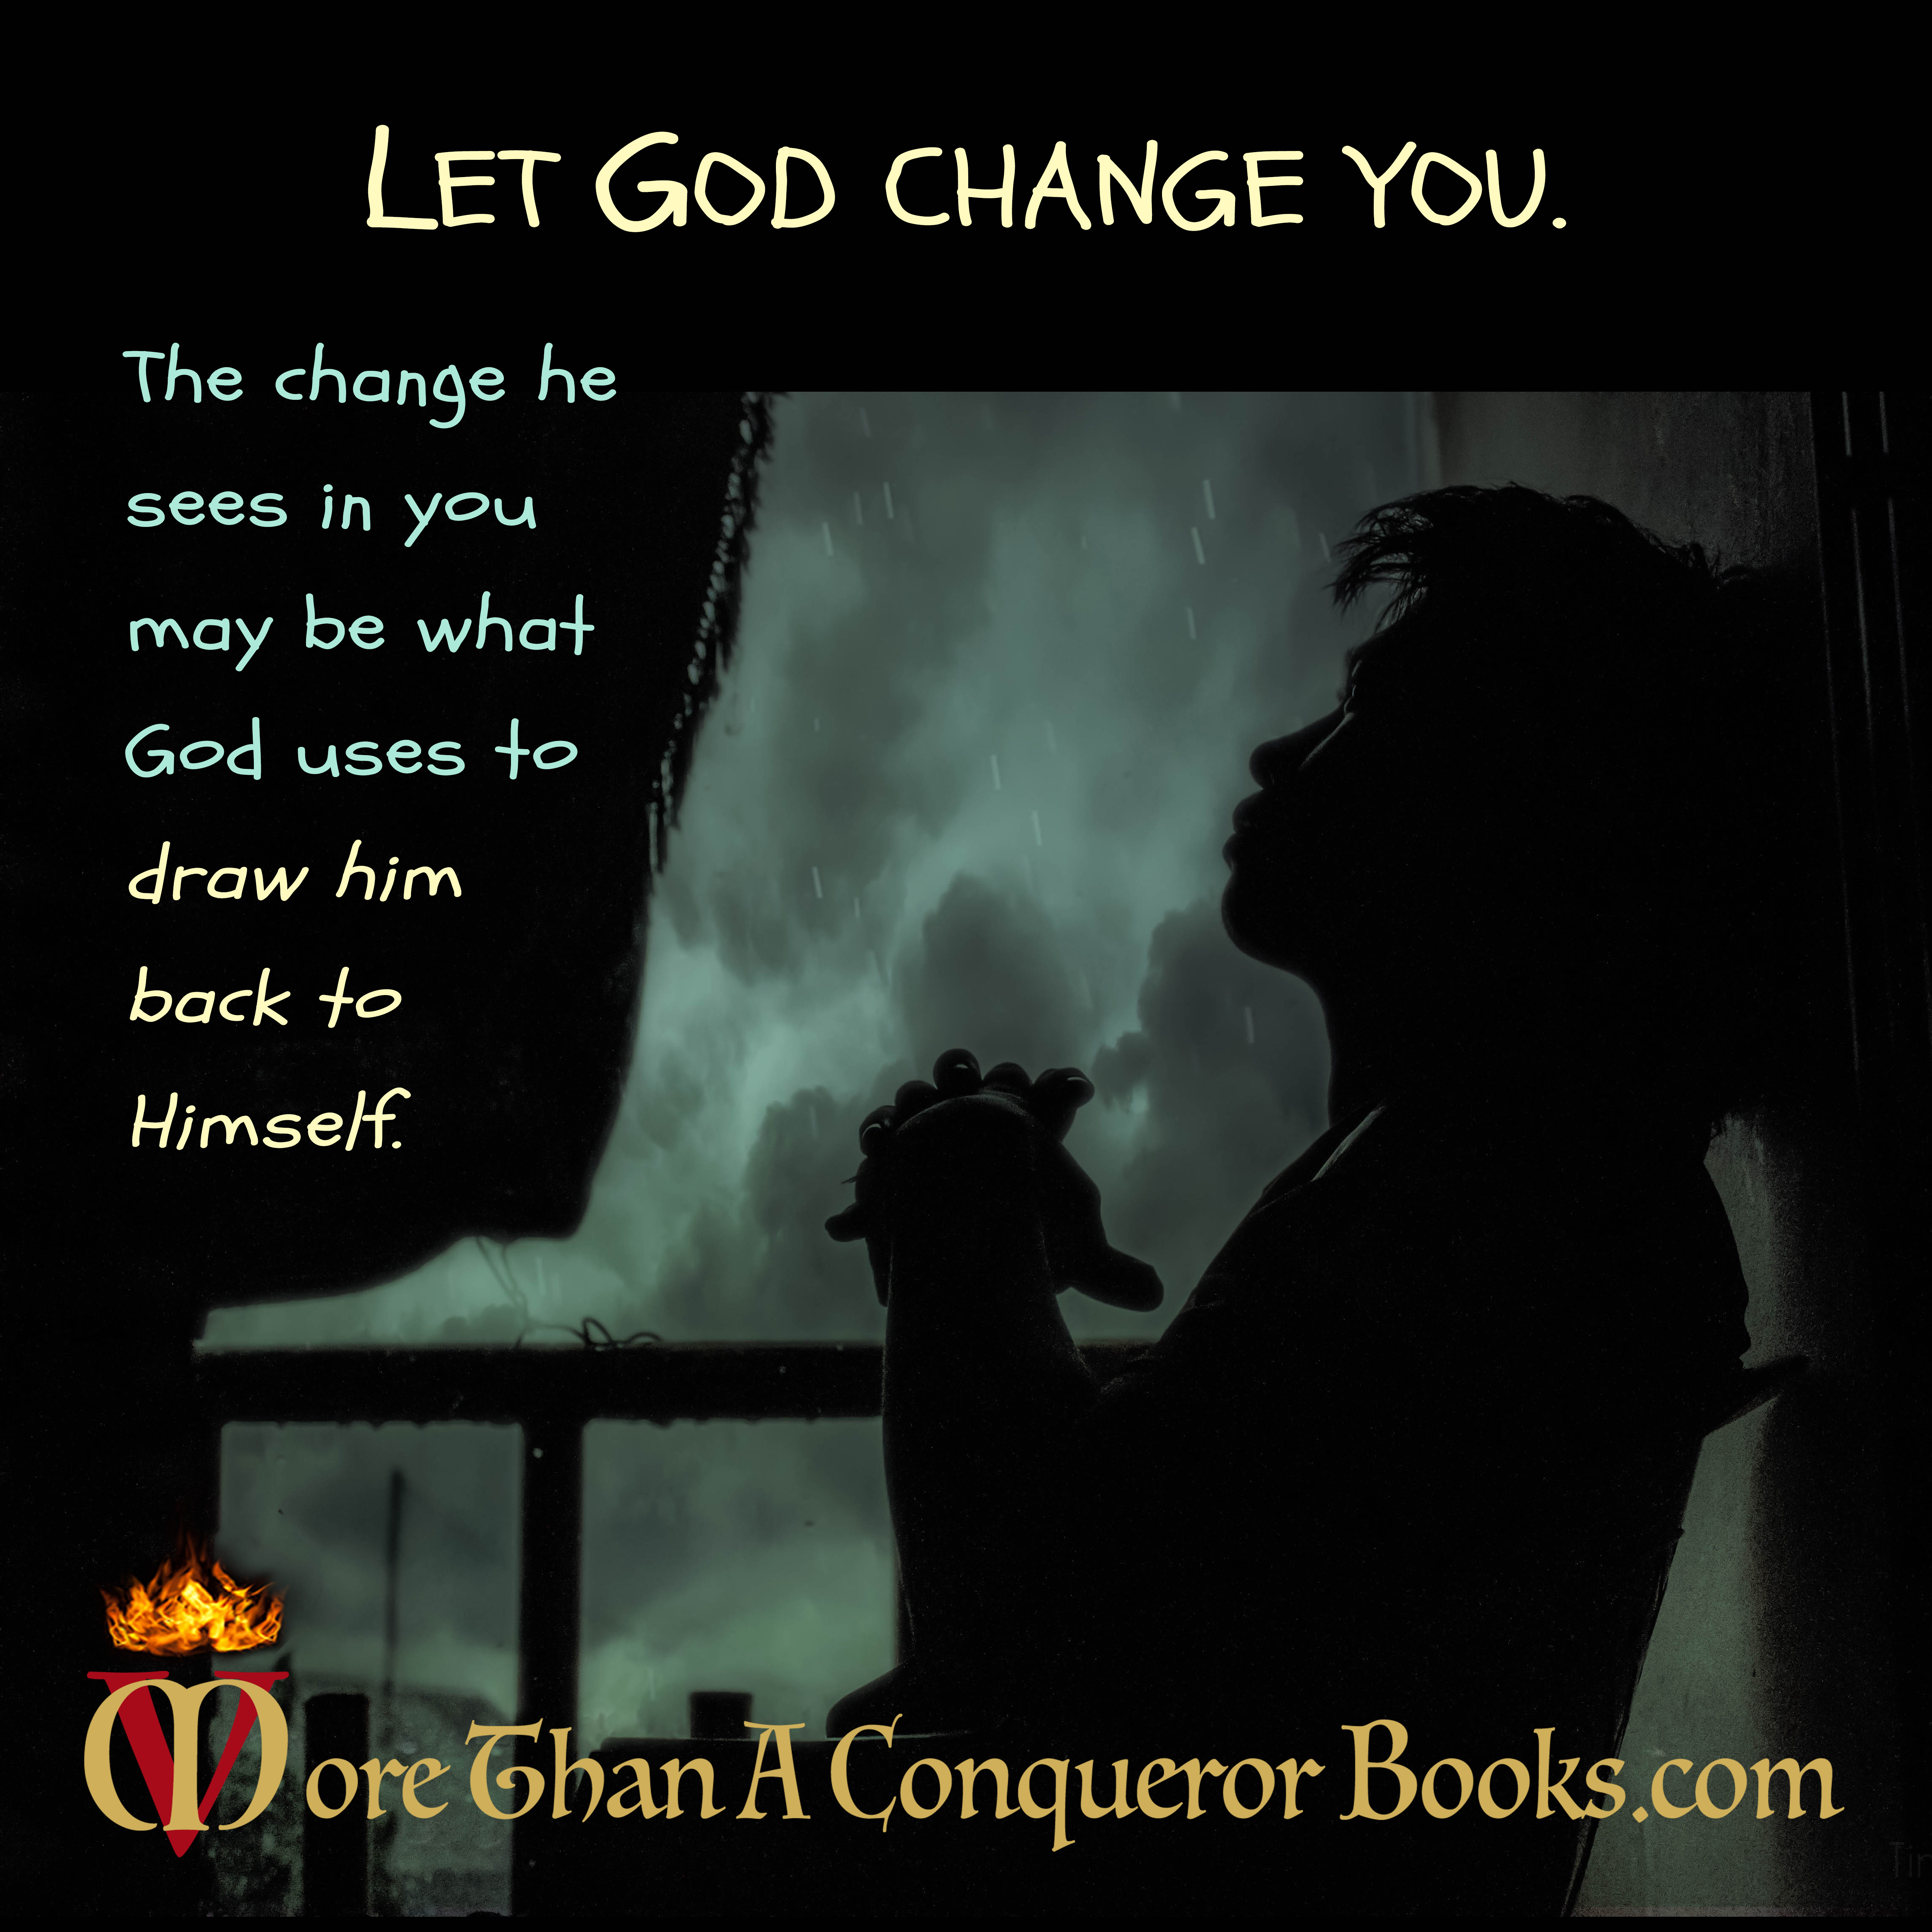 Let God change you-Parents modeling Christ-Mikaela Vincent-MoreThanAConquerorBooks